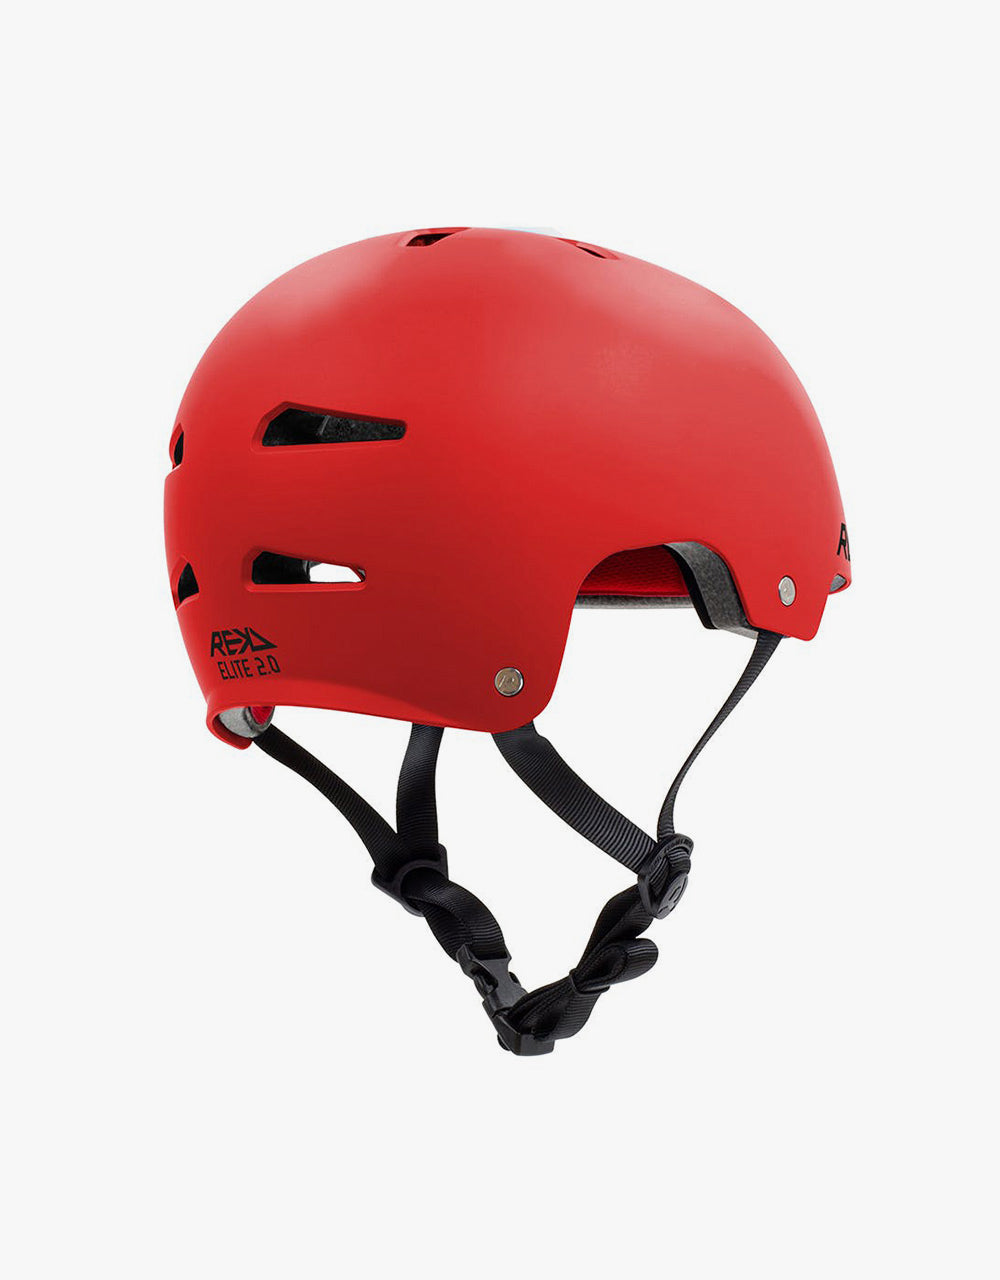 REKD Elite 2.0 Helmet - Red